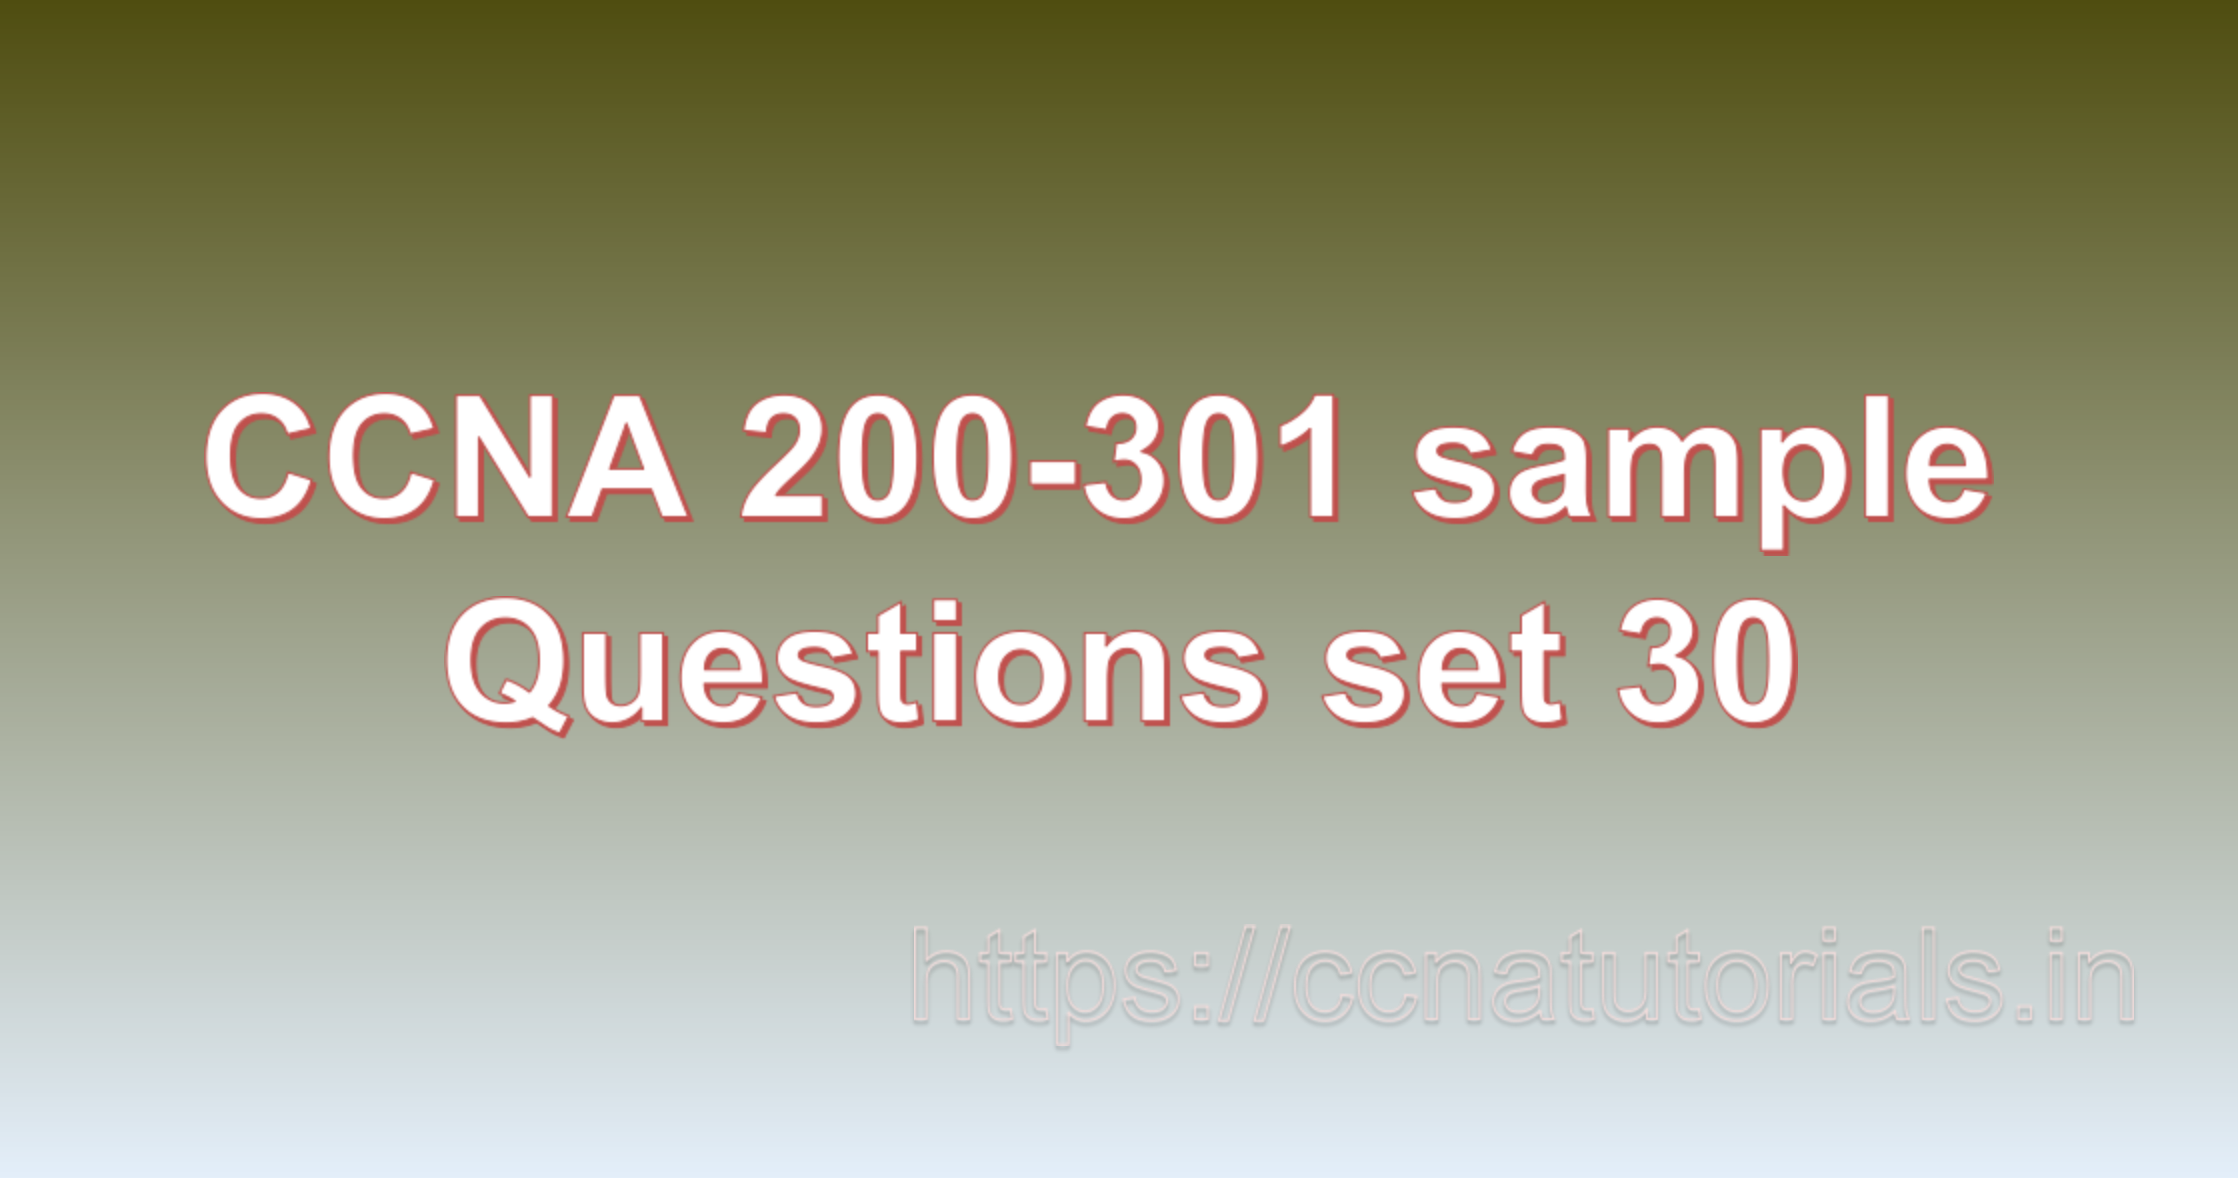 ccna sample questions set 30, ccna tutorials, CCNA Exam, ccna